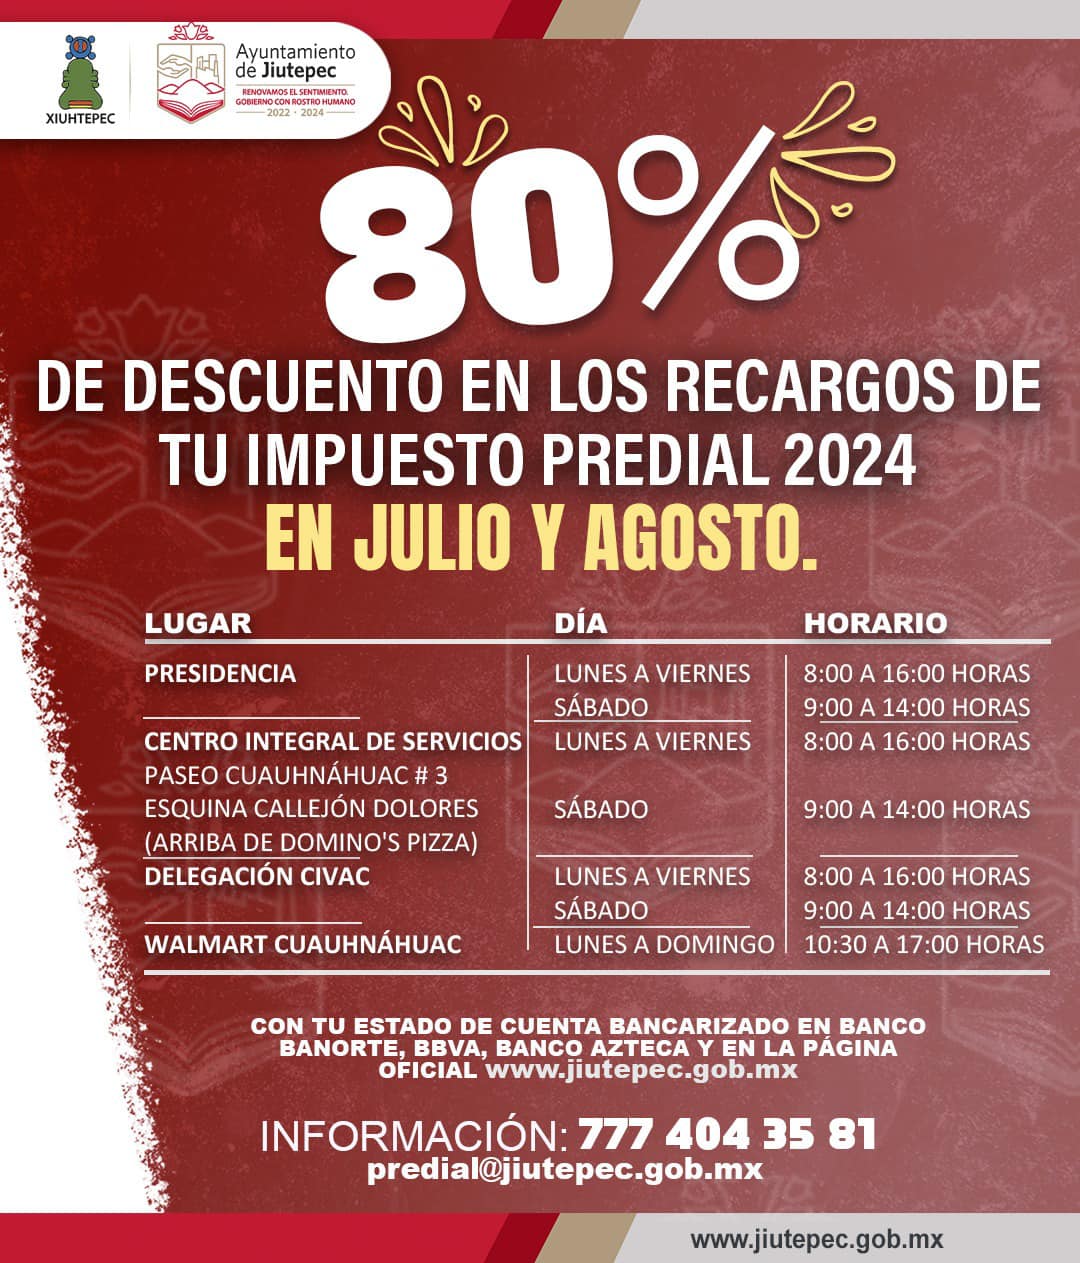 GOBIERNO DE JIUTEPEC AMPLÍA CAMPAÑA DE DESCUENTO EN EL IMPUESTO PREDIAL 2024